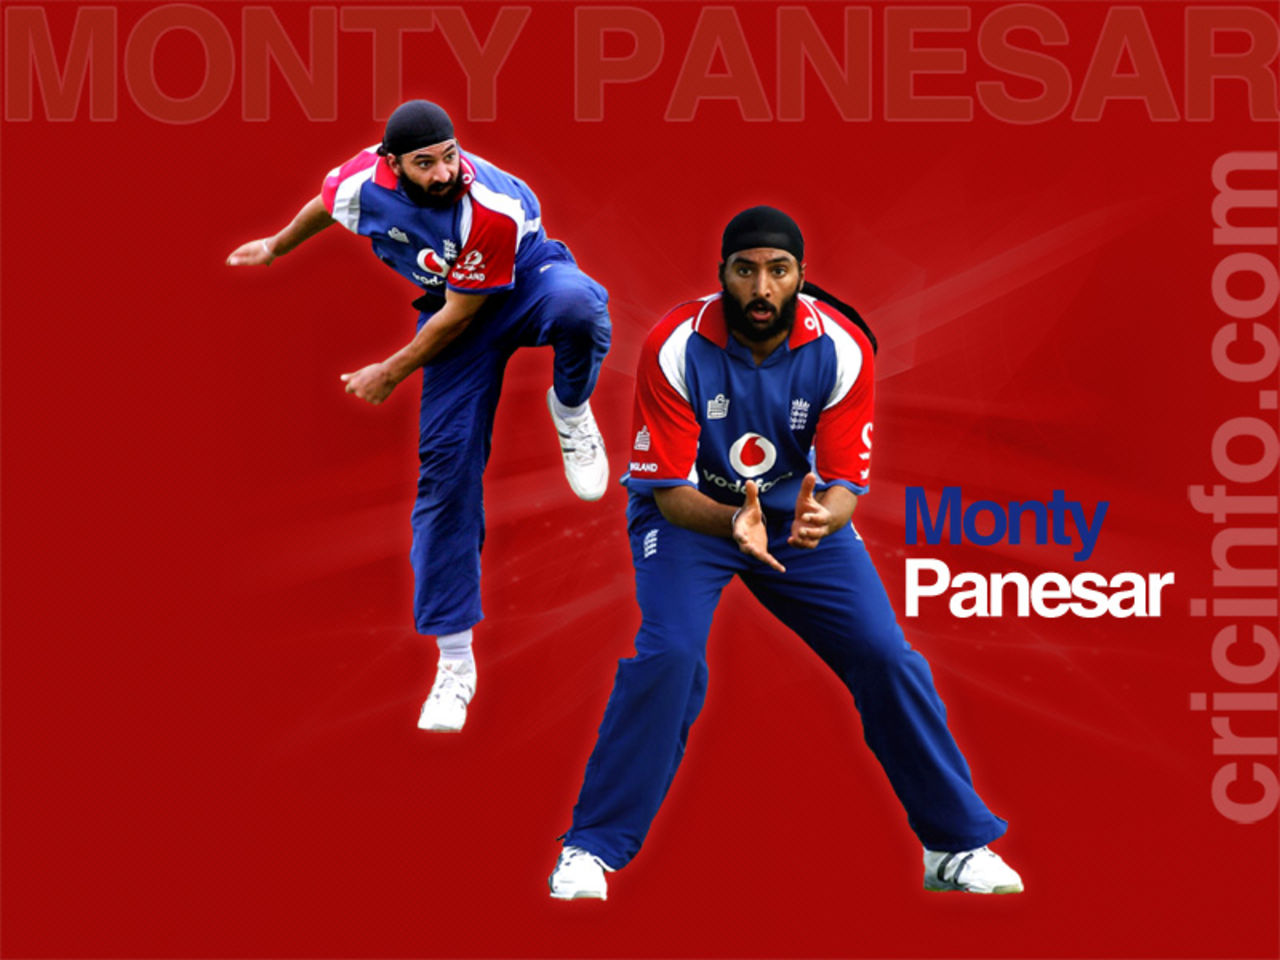 Monty Panesar